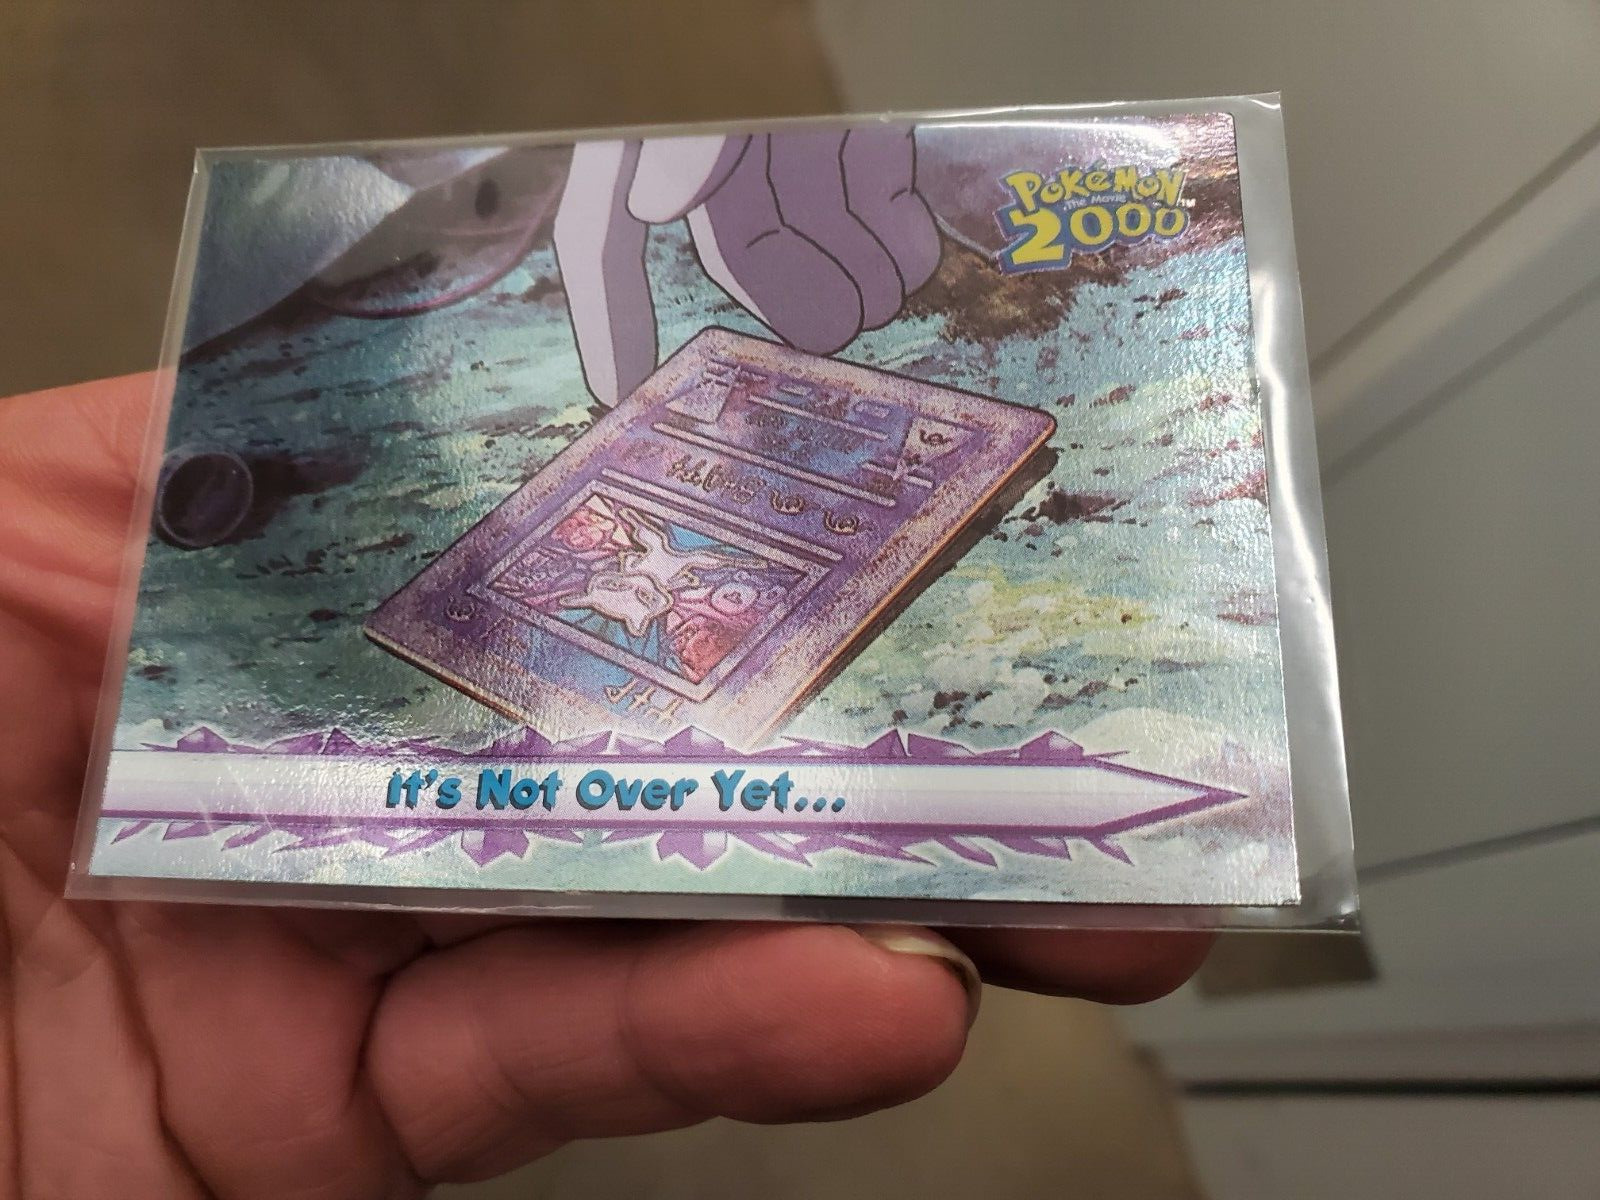 HOLO LP Pokemon Topps Card - Pokemon 2000 - It's Not Over Yet #70 - Foil